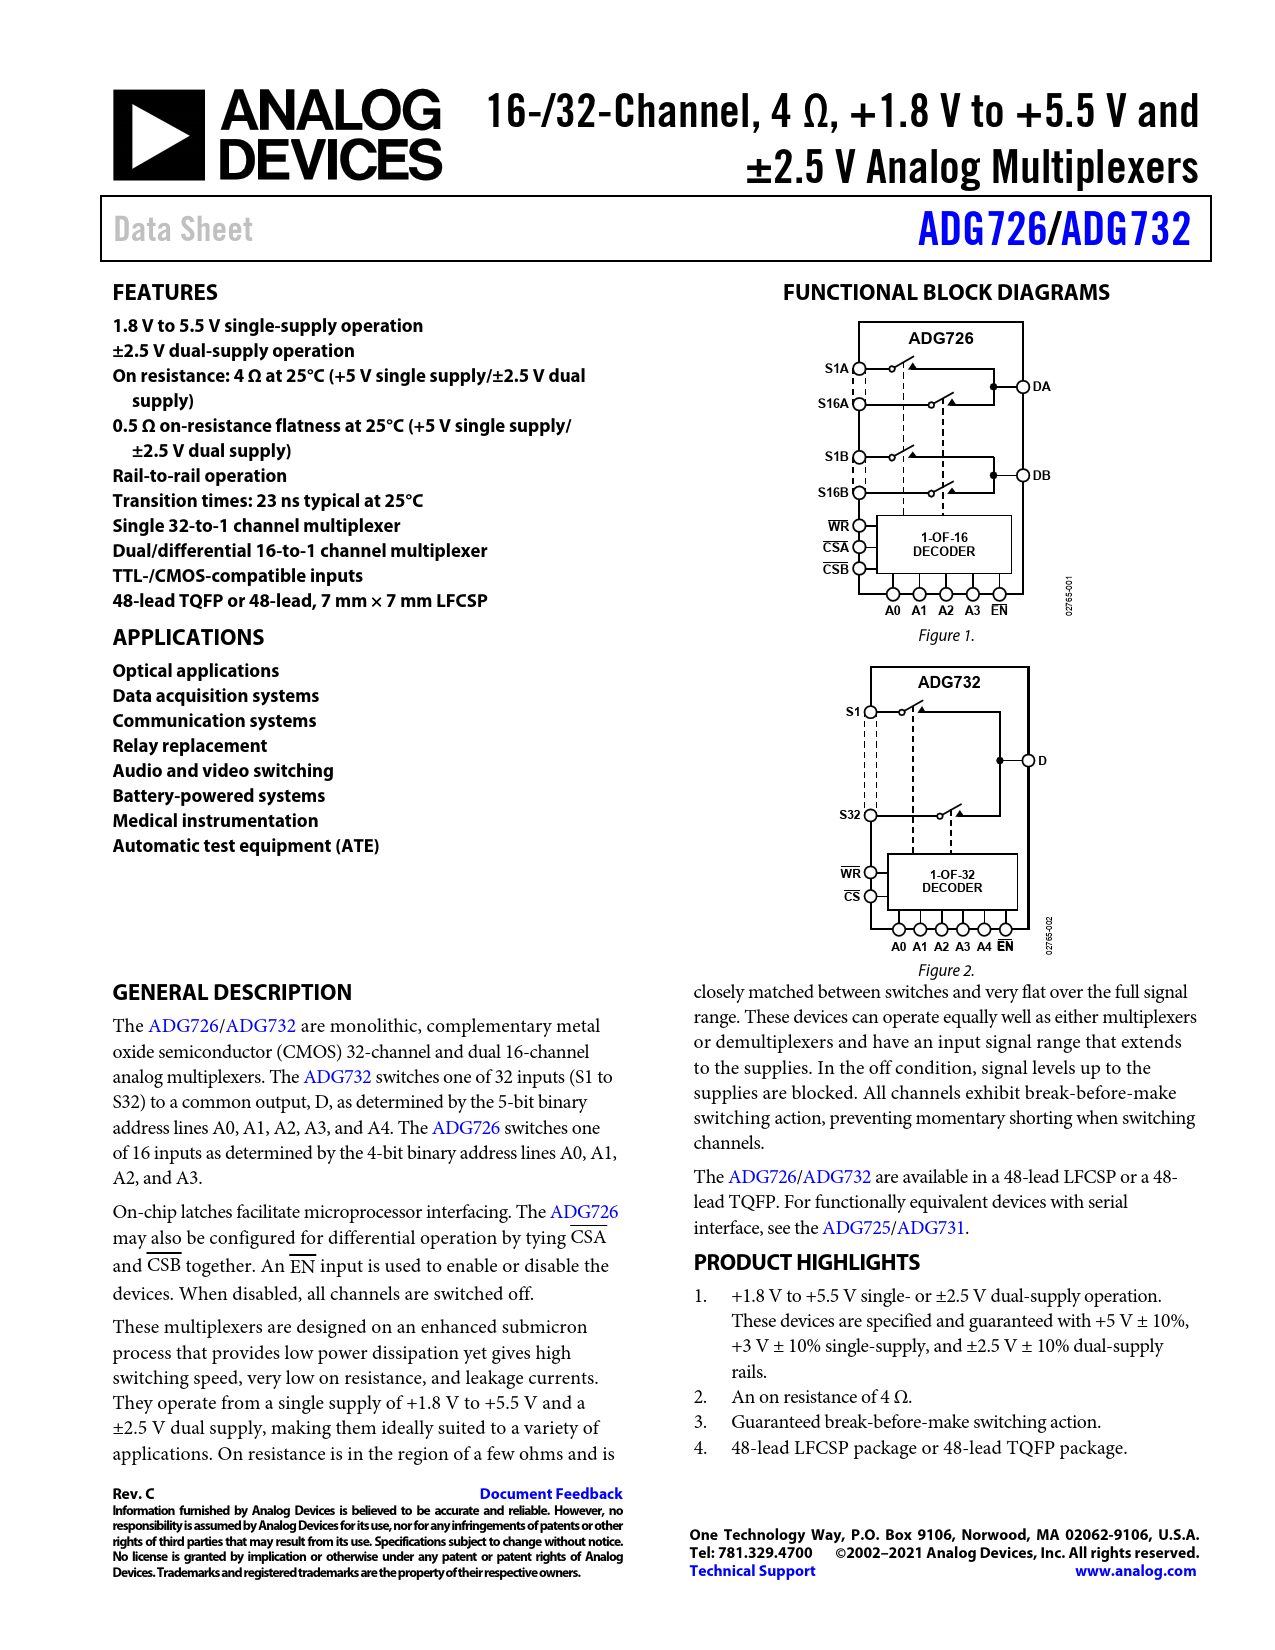 Datasheet ADG726, ADG732 Analog Devices, Версия: C